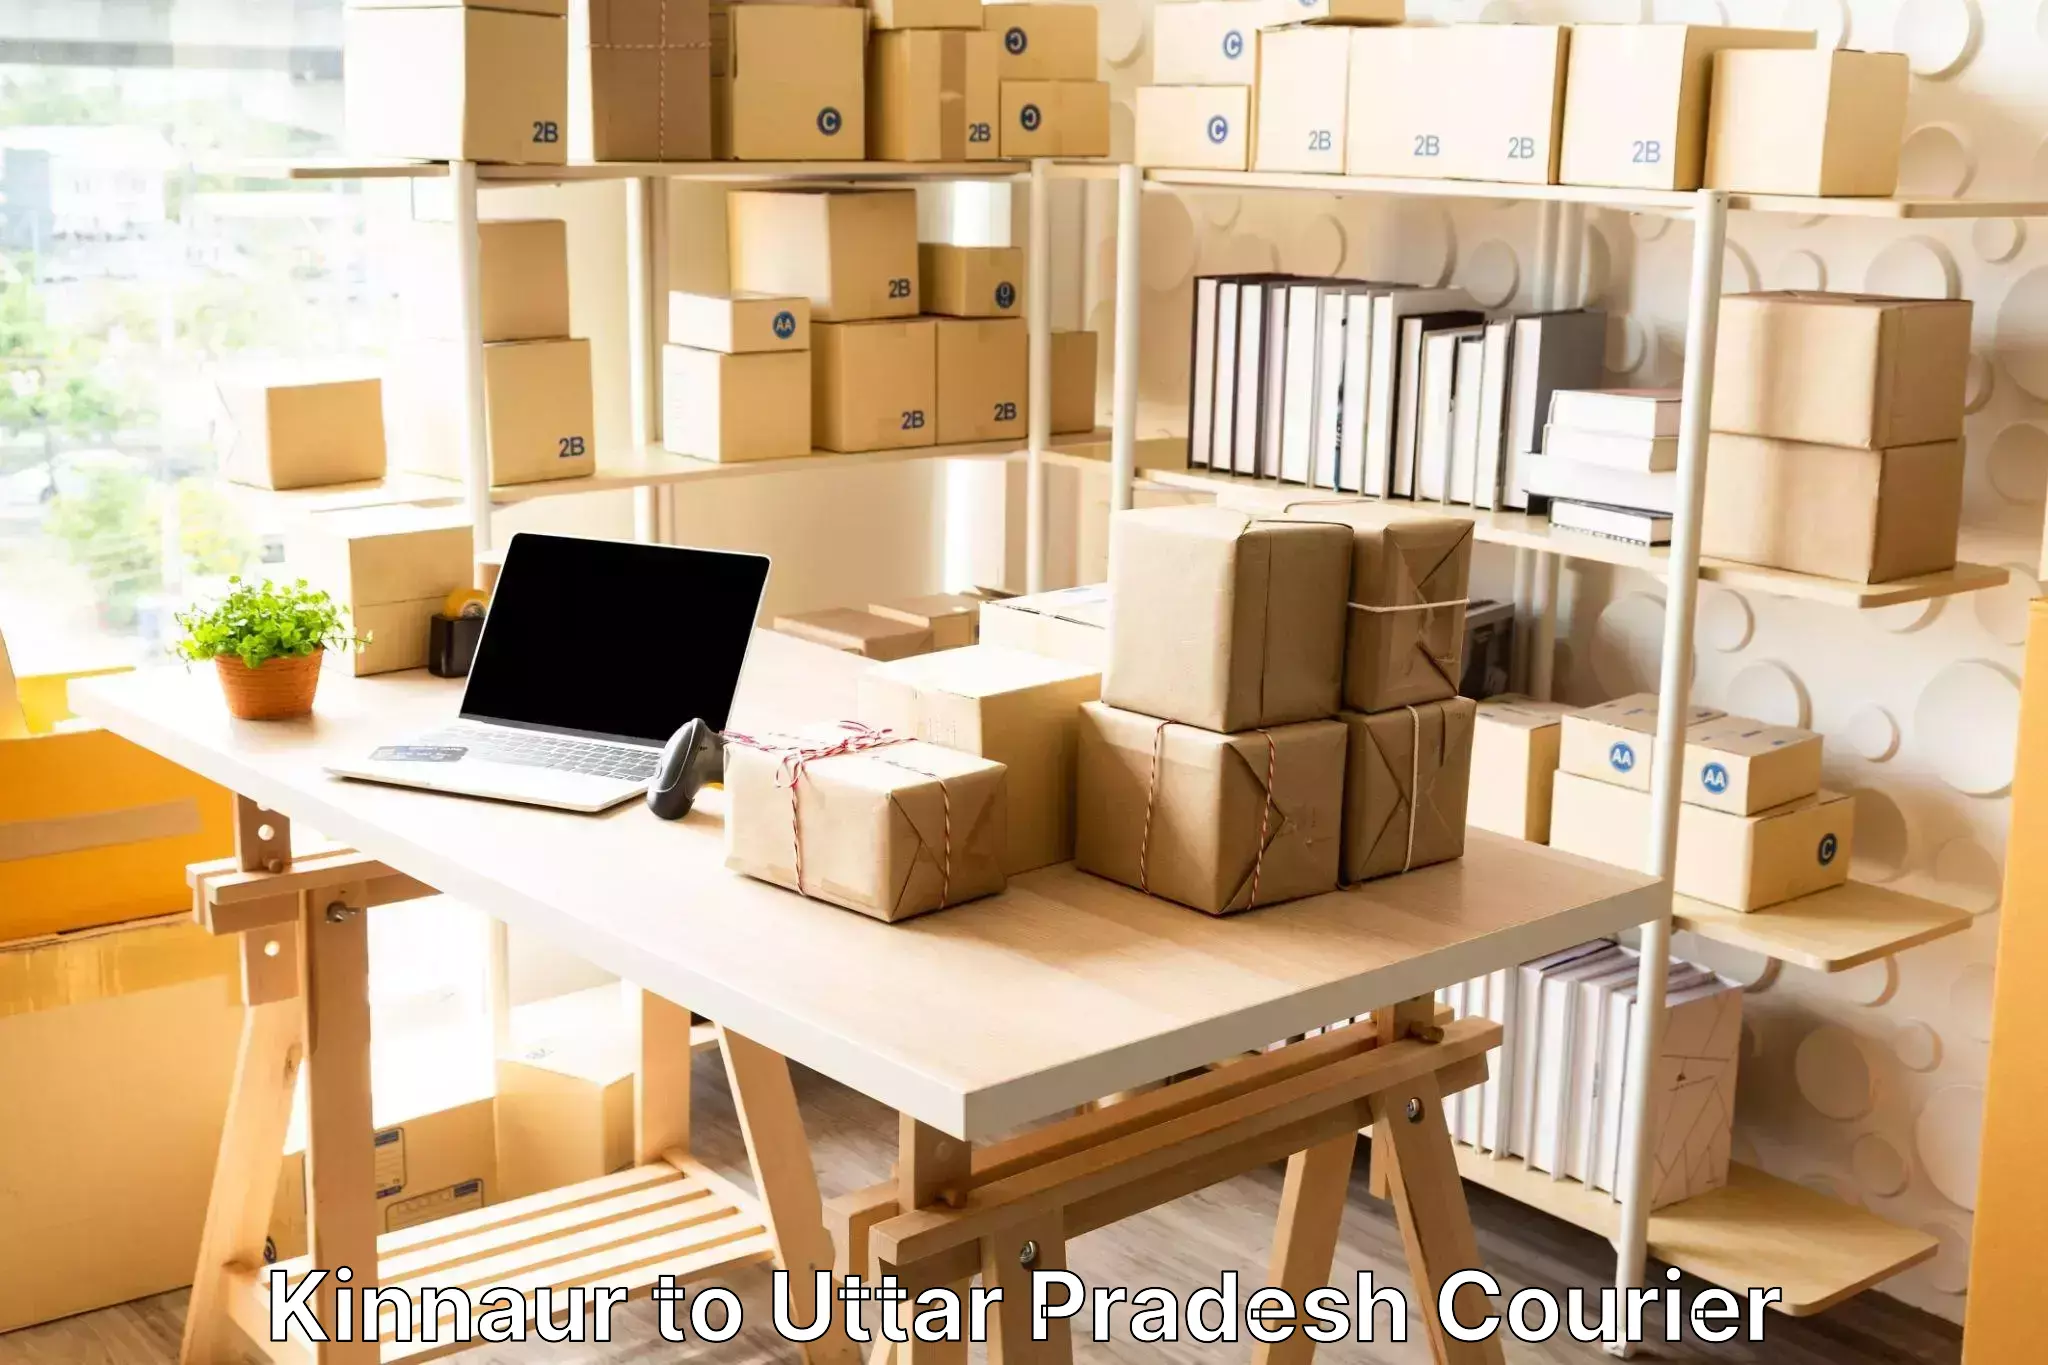 Luggage shipment tracking Kinnaur to Uttar Pradesh